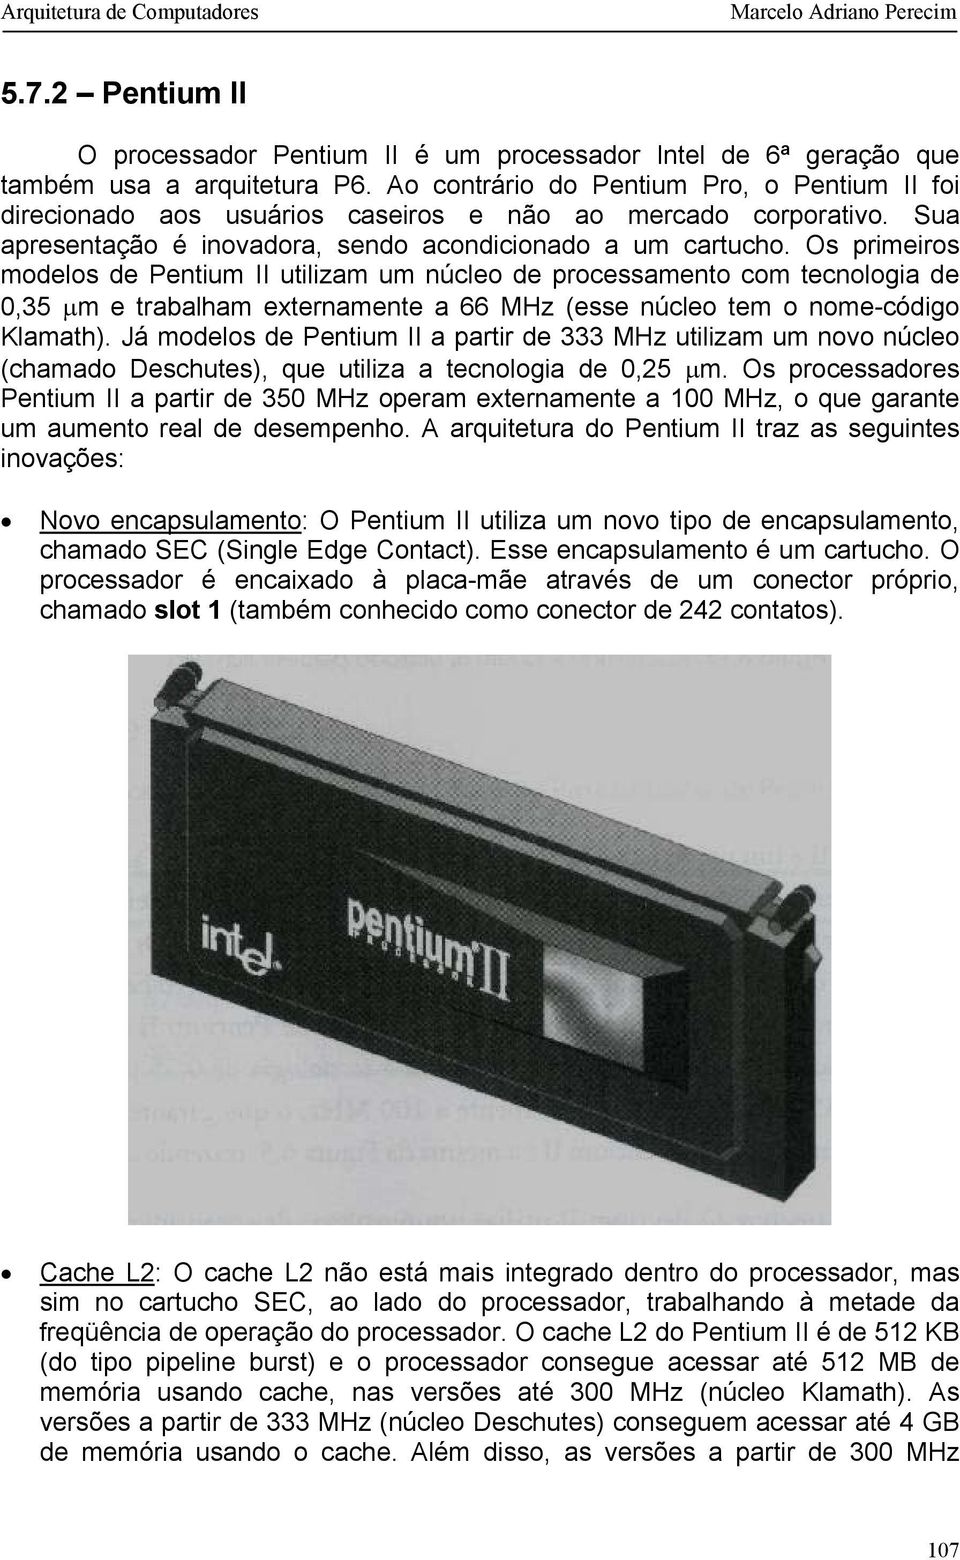 Os primeiros modelos de Pentium II utilizam um núcleo de processamento com tecnologia de 0,35 µm e trabalham externamente a 66 MHz (esse núcleo tem o nome-código Klamath).